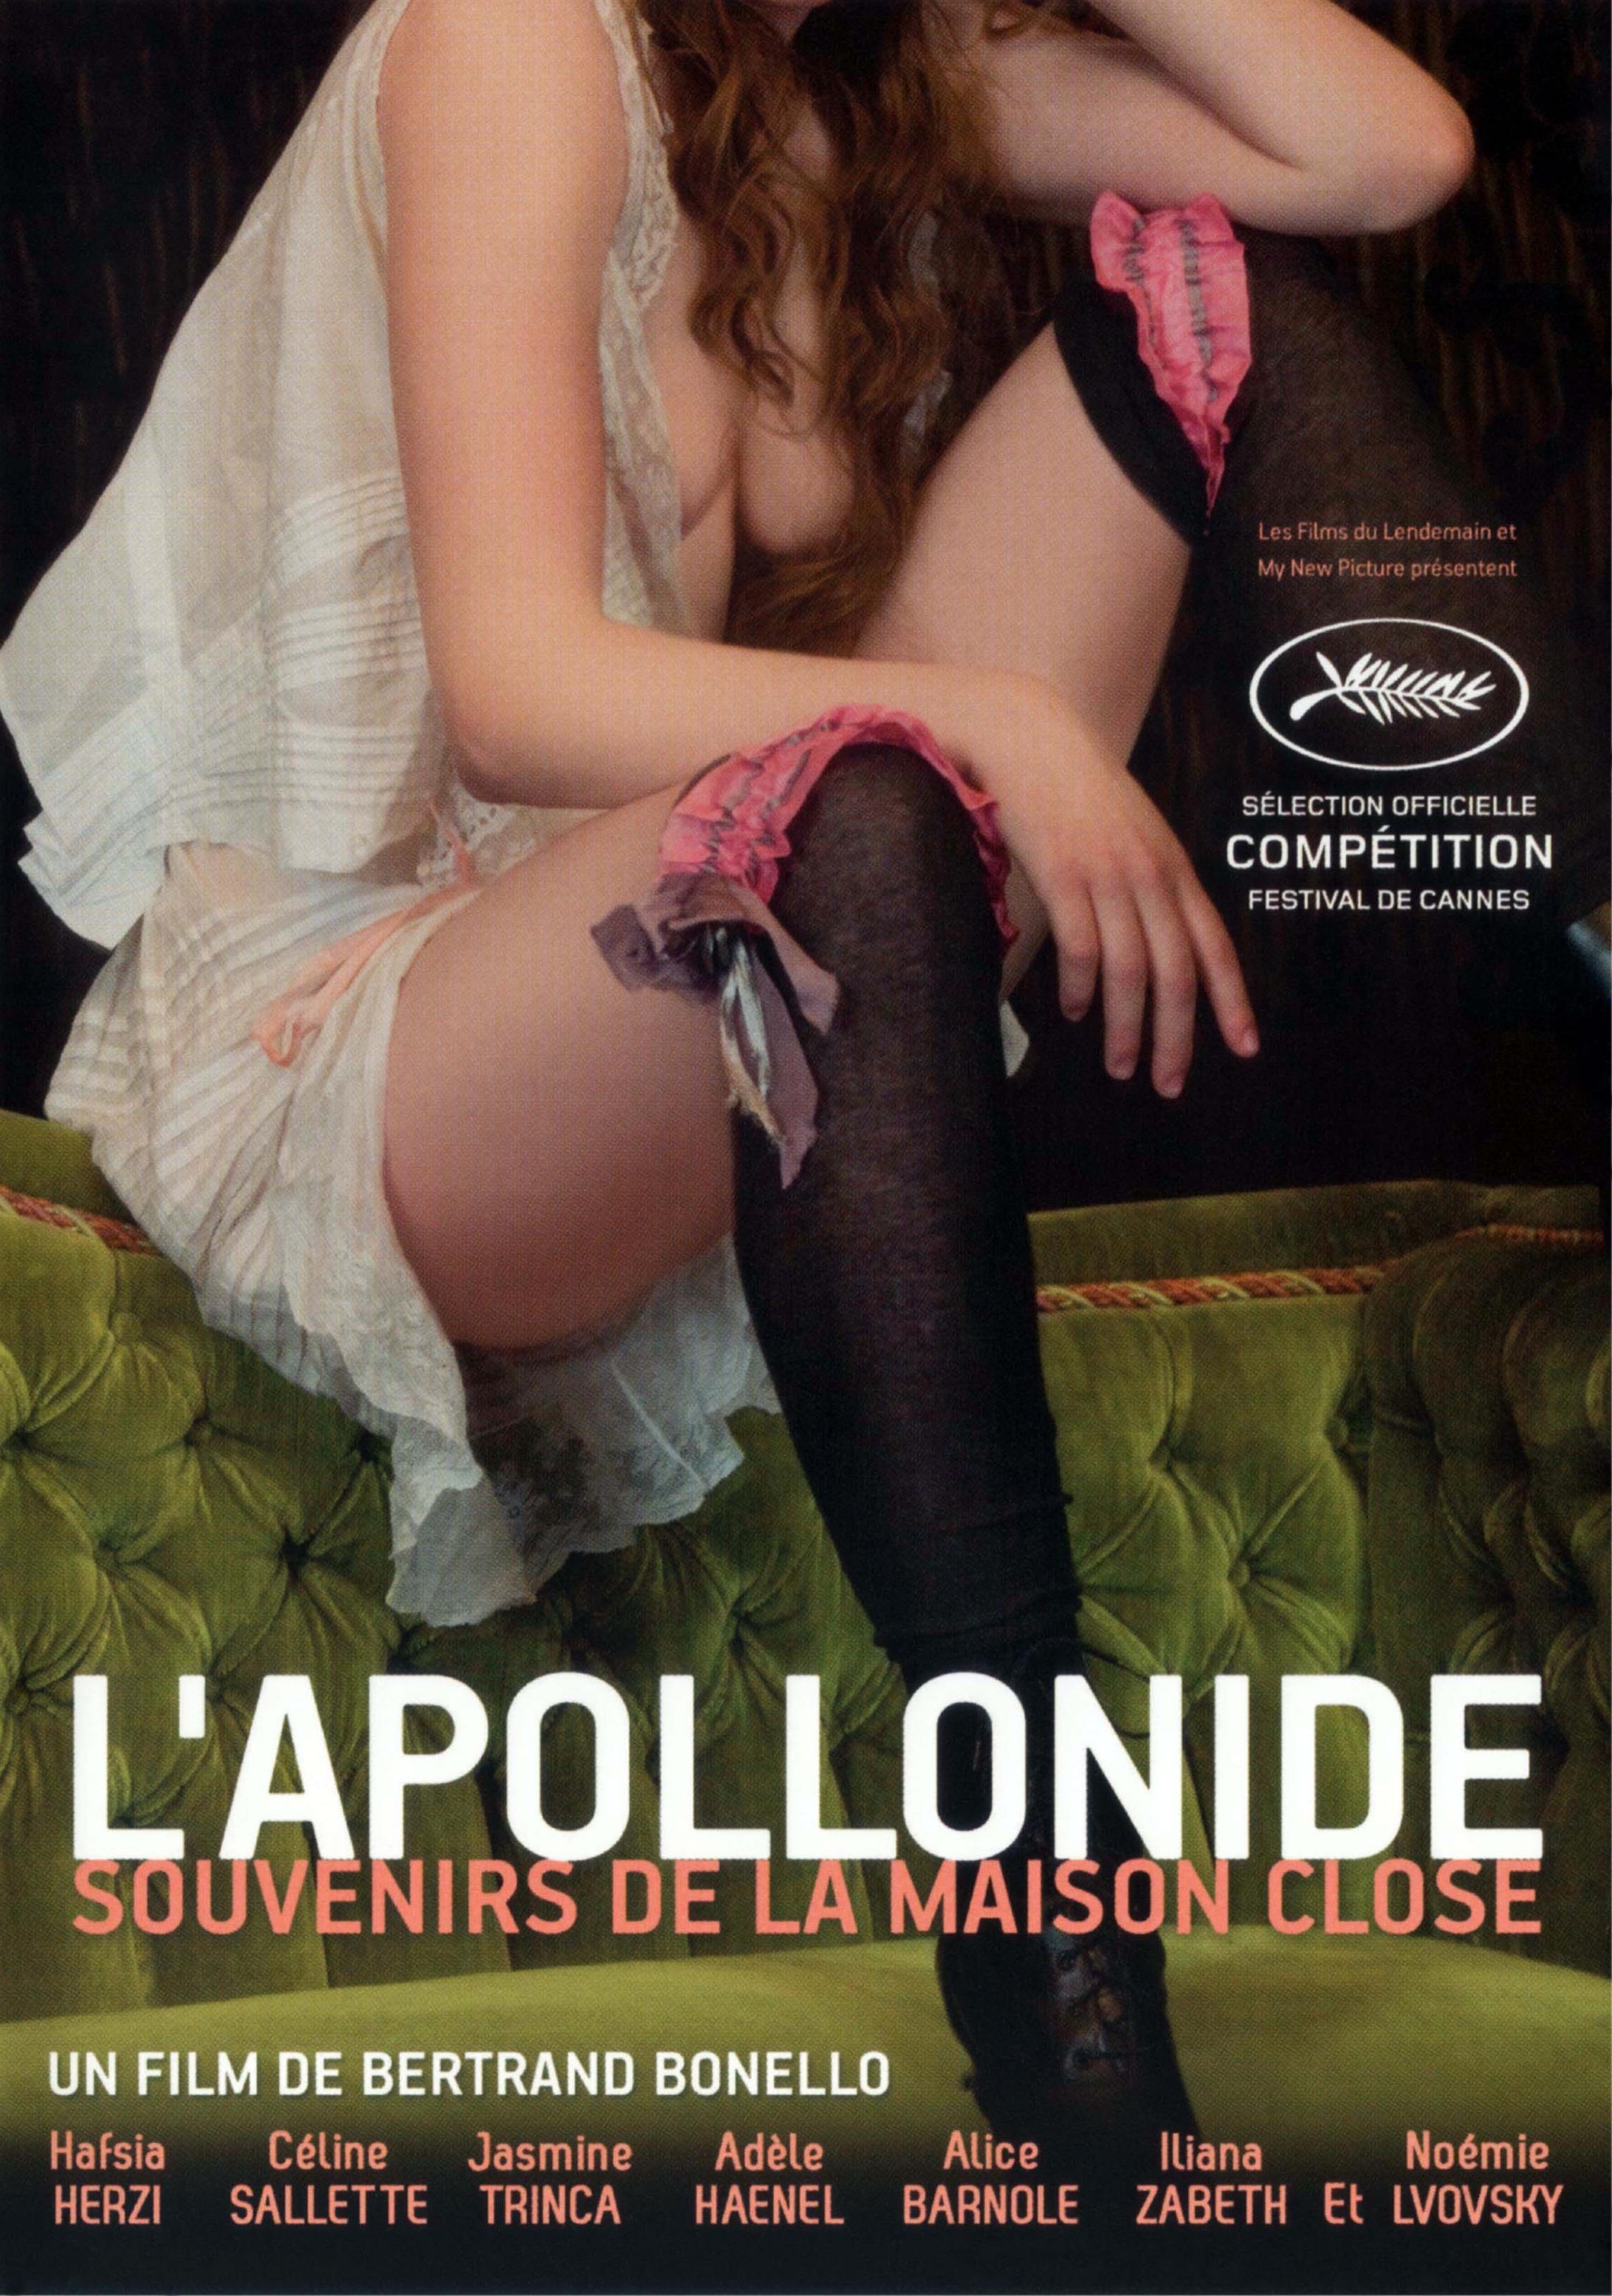 Постер фильма Дом терпимости | L'Apollonide (Souvenirs de la maison close)